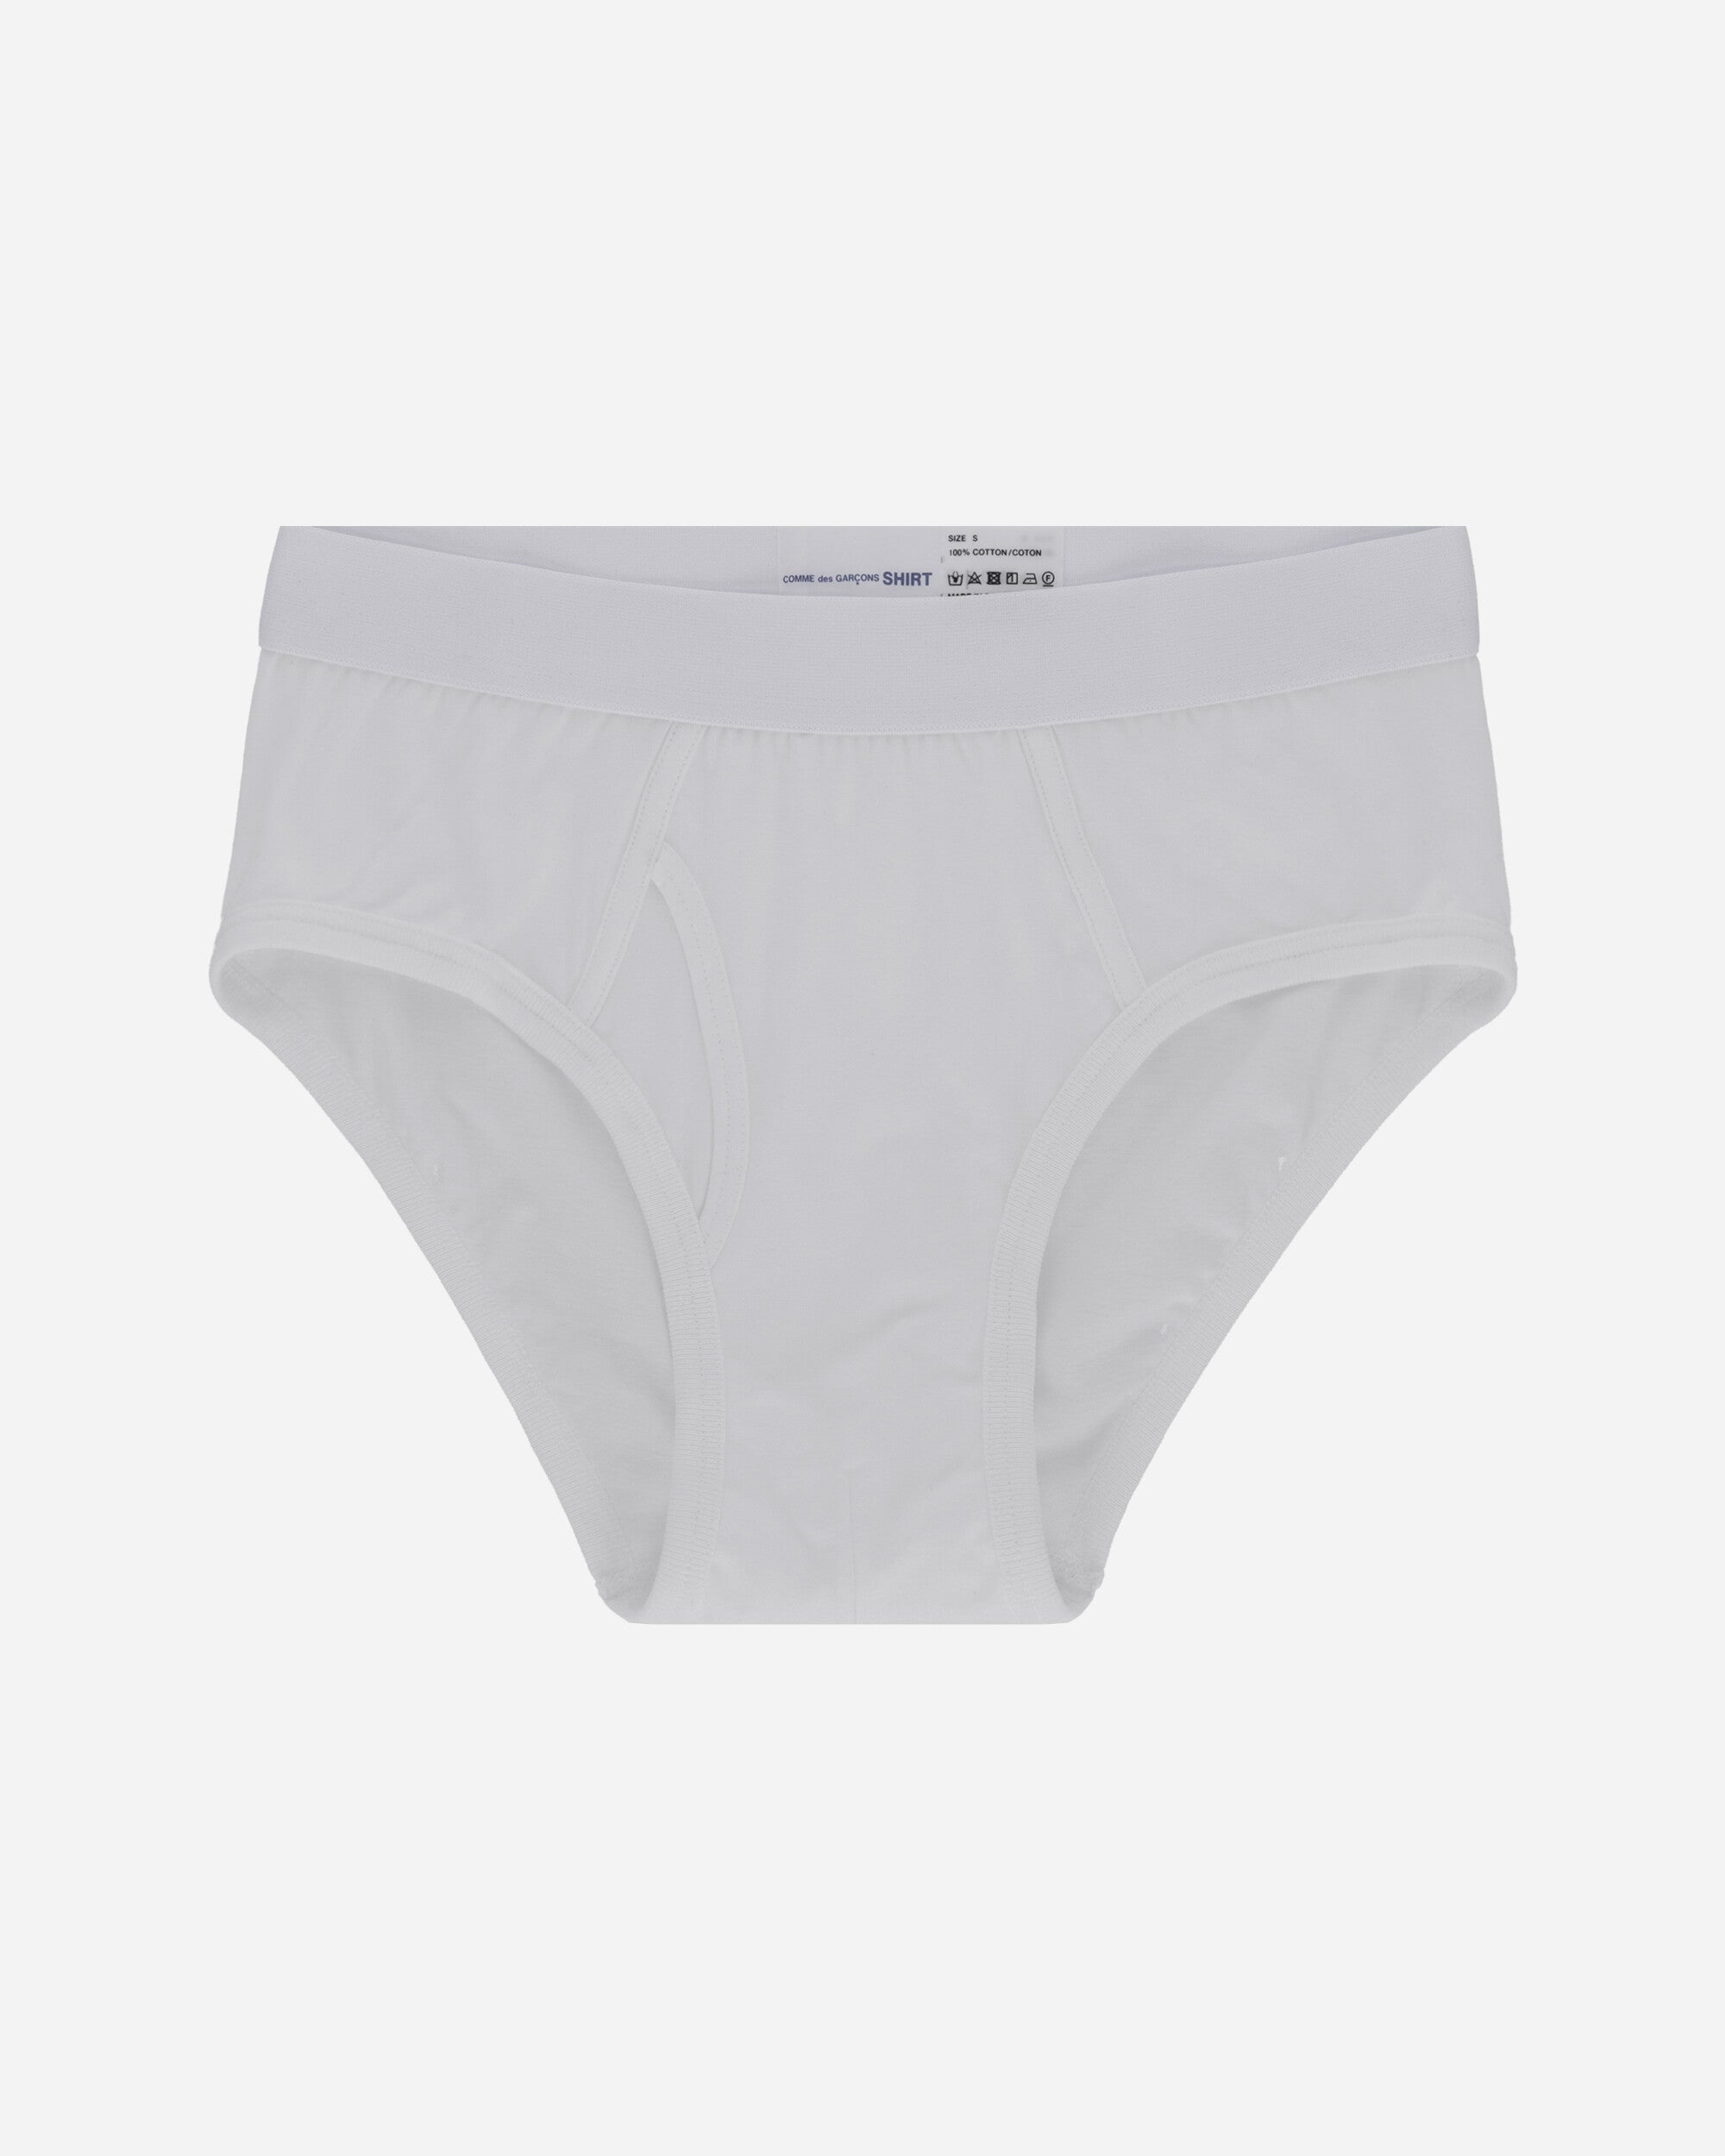 Comme Des Garçons Shirt Cdg Forever Brief White Underwear Briefs FZ-T914-PER 4